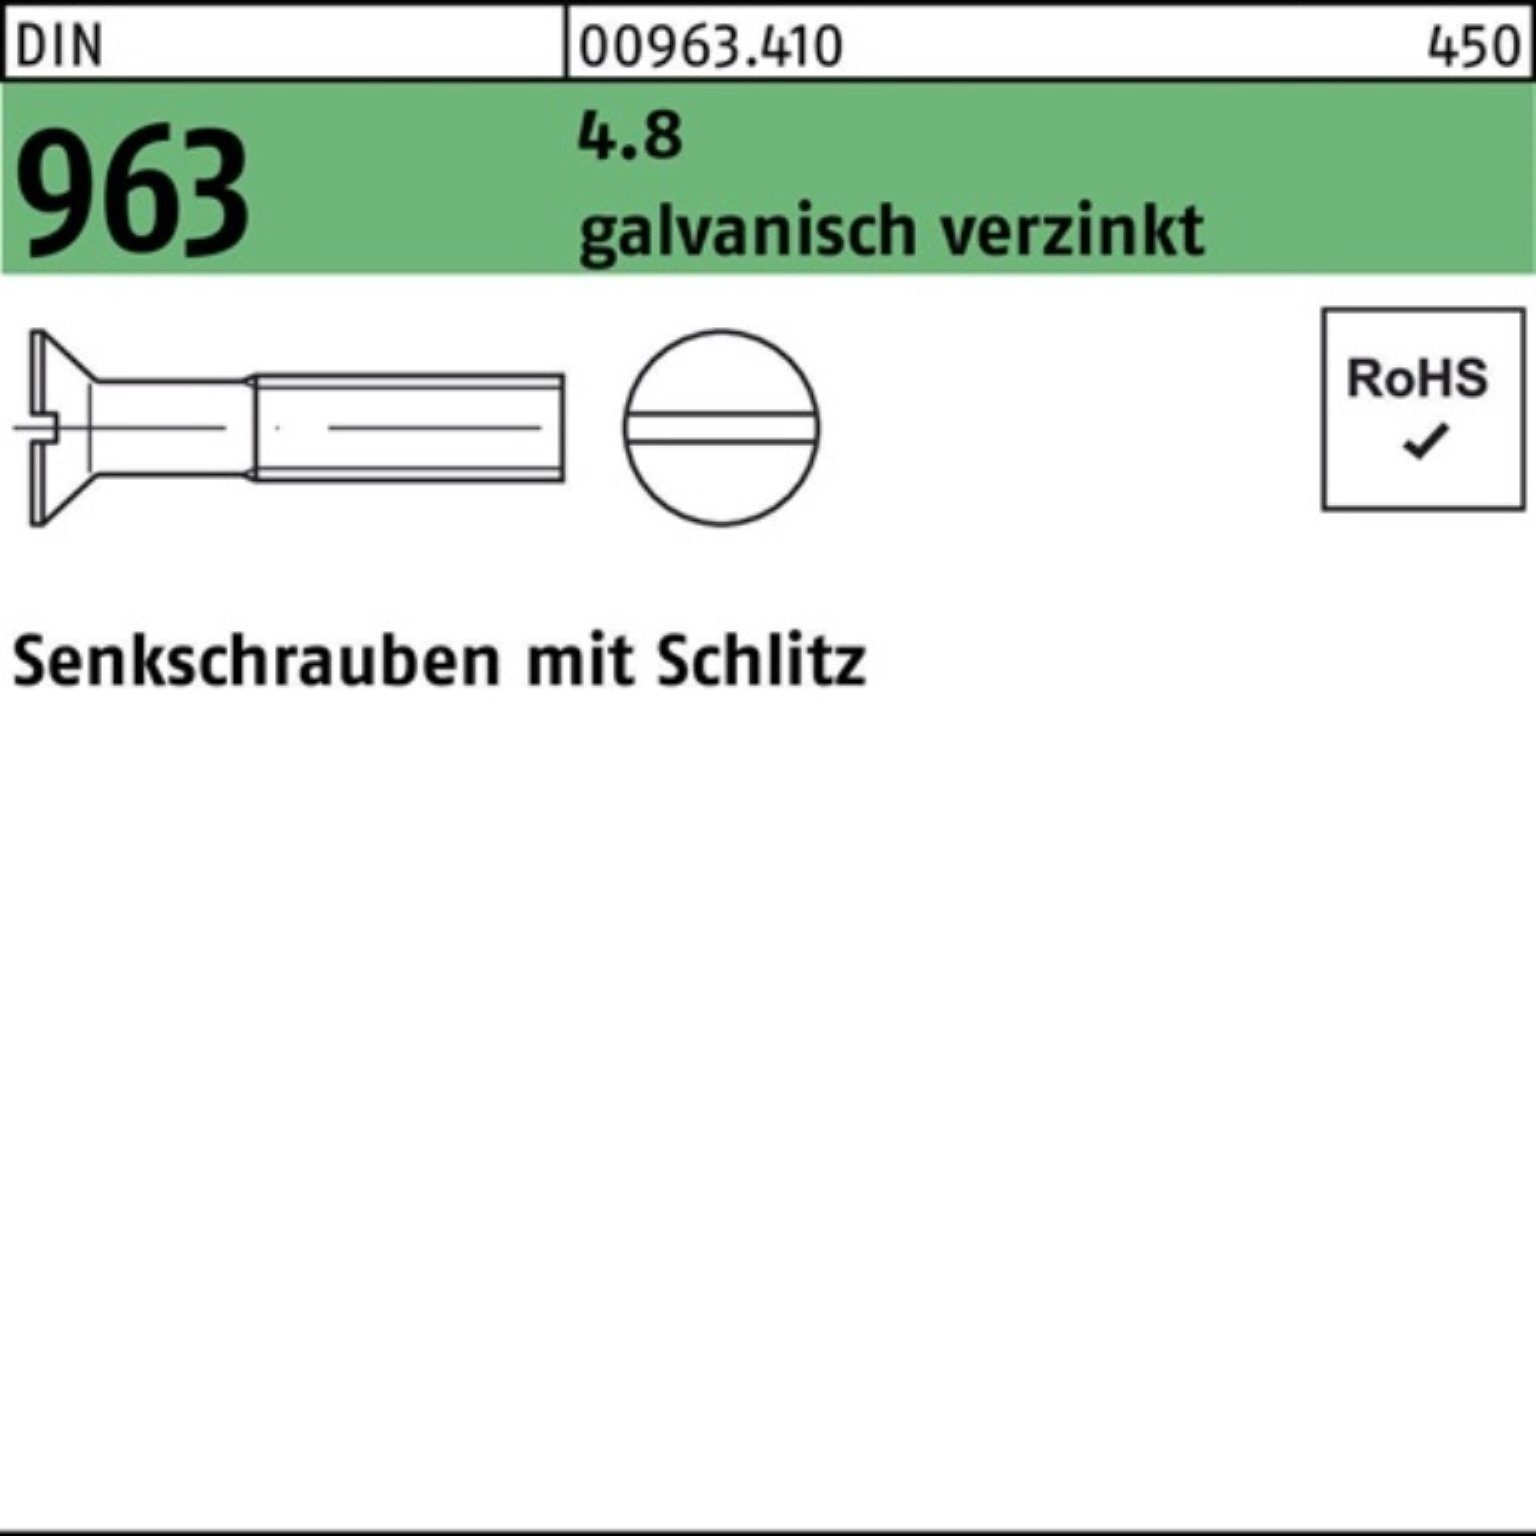 2000er 2000 8 galv.verz. 4.8 Senkschraube Senkschraube Schlitz 963 Reyher St DIN M3x Pack